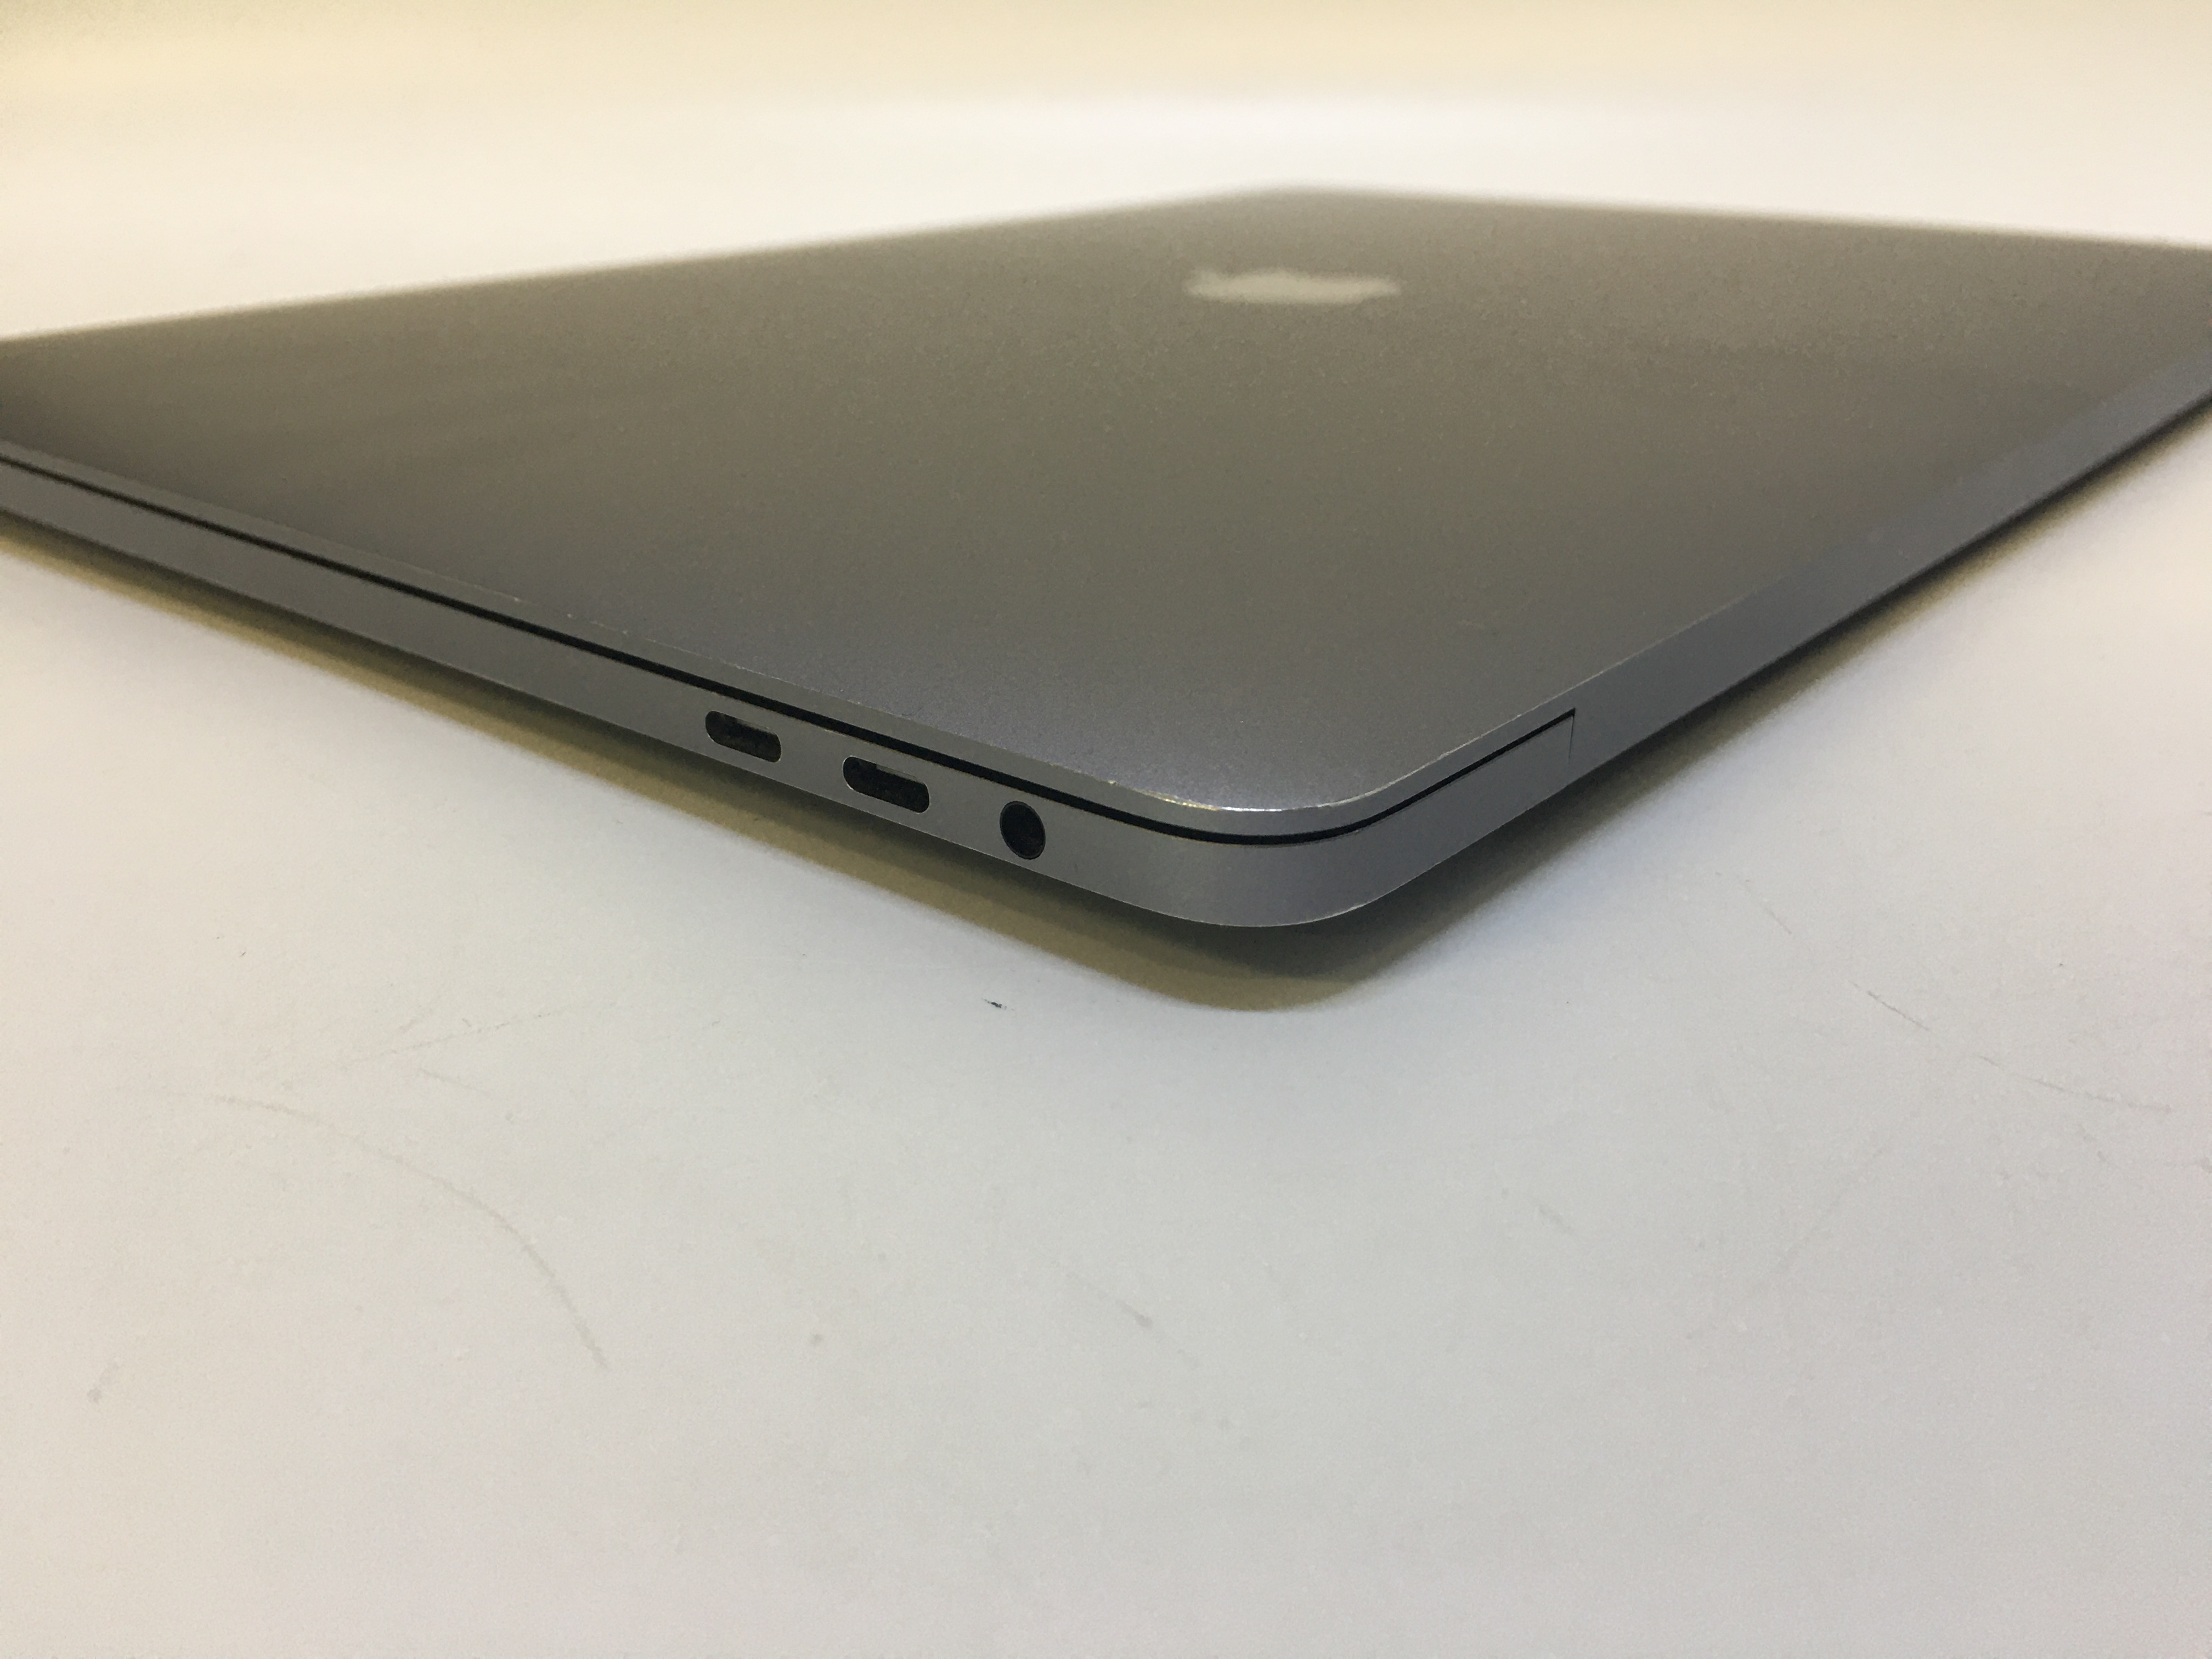 2017 mac mini i7 specs